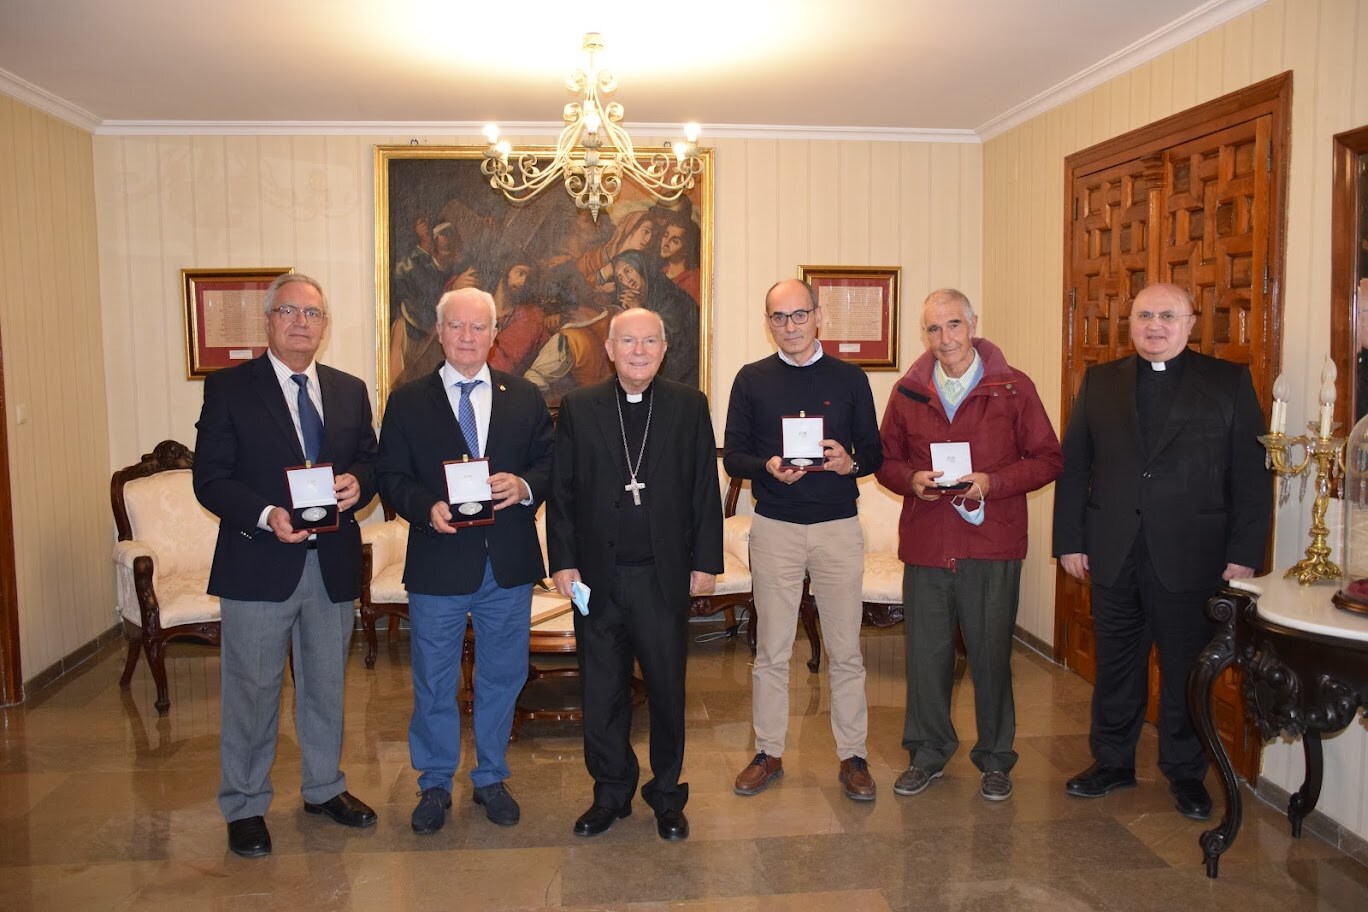 Monseñor Rodríguez Magro concede a la Comisión gestora de la Cofradía Matriz de la Virgen de la Cabeza la Medalla de la Diócesis